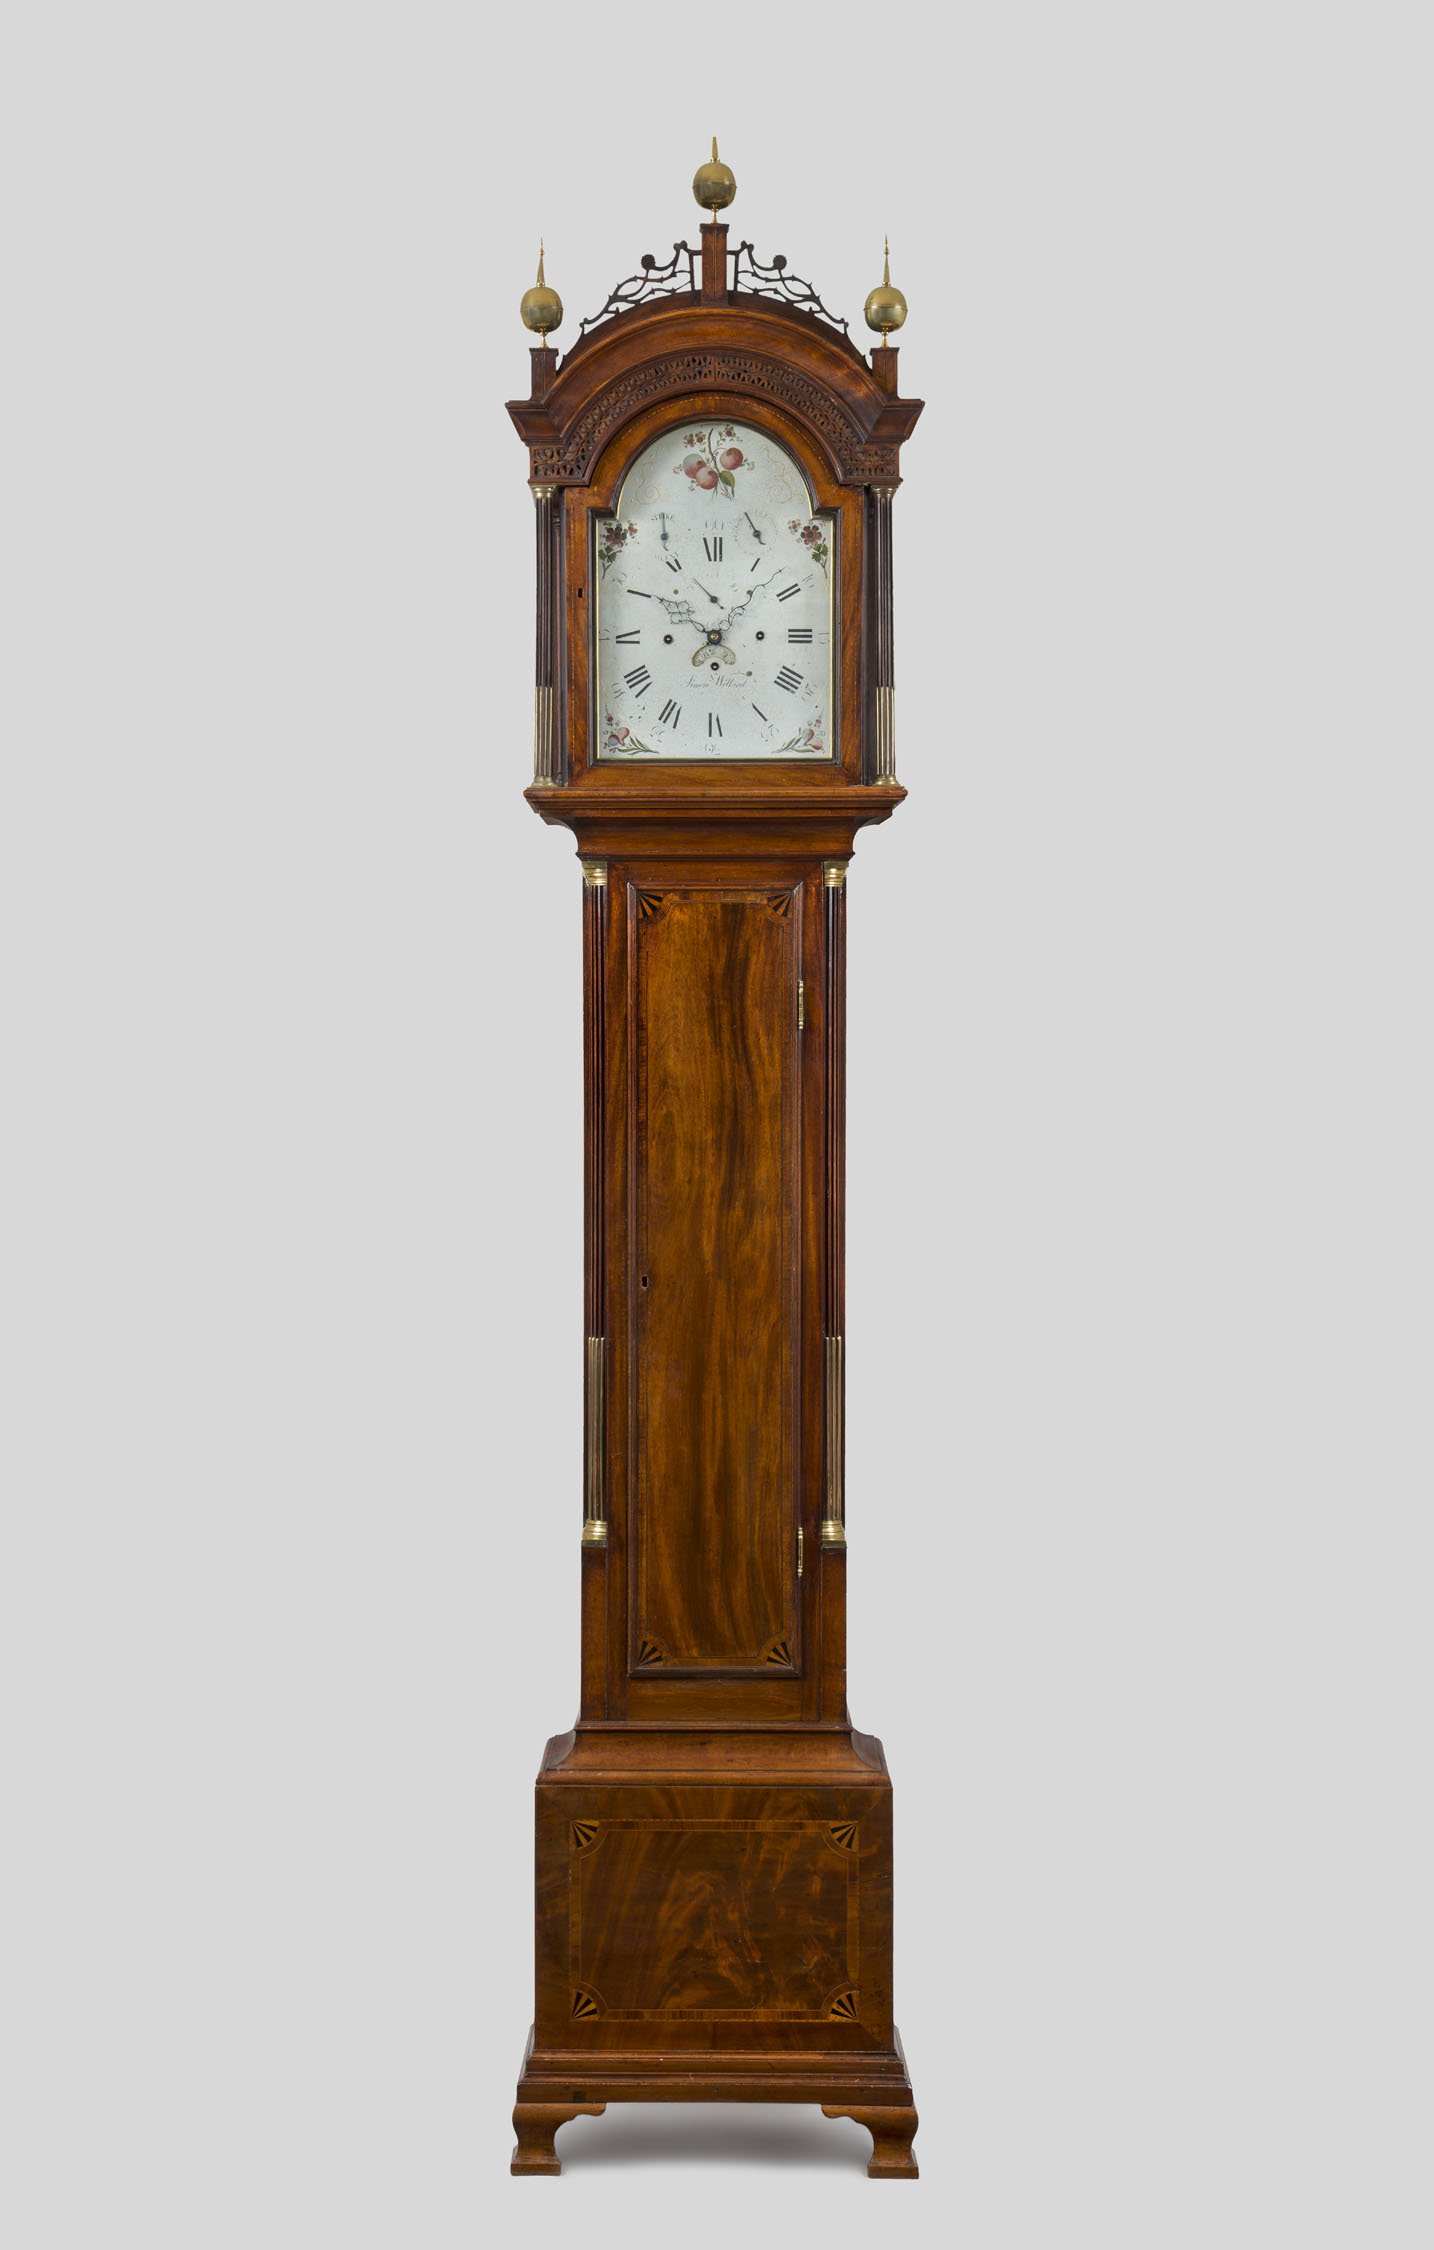 S. Willard Musical Clock, c. 1792